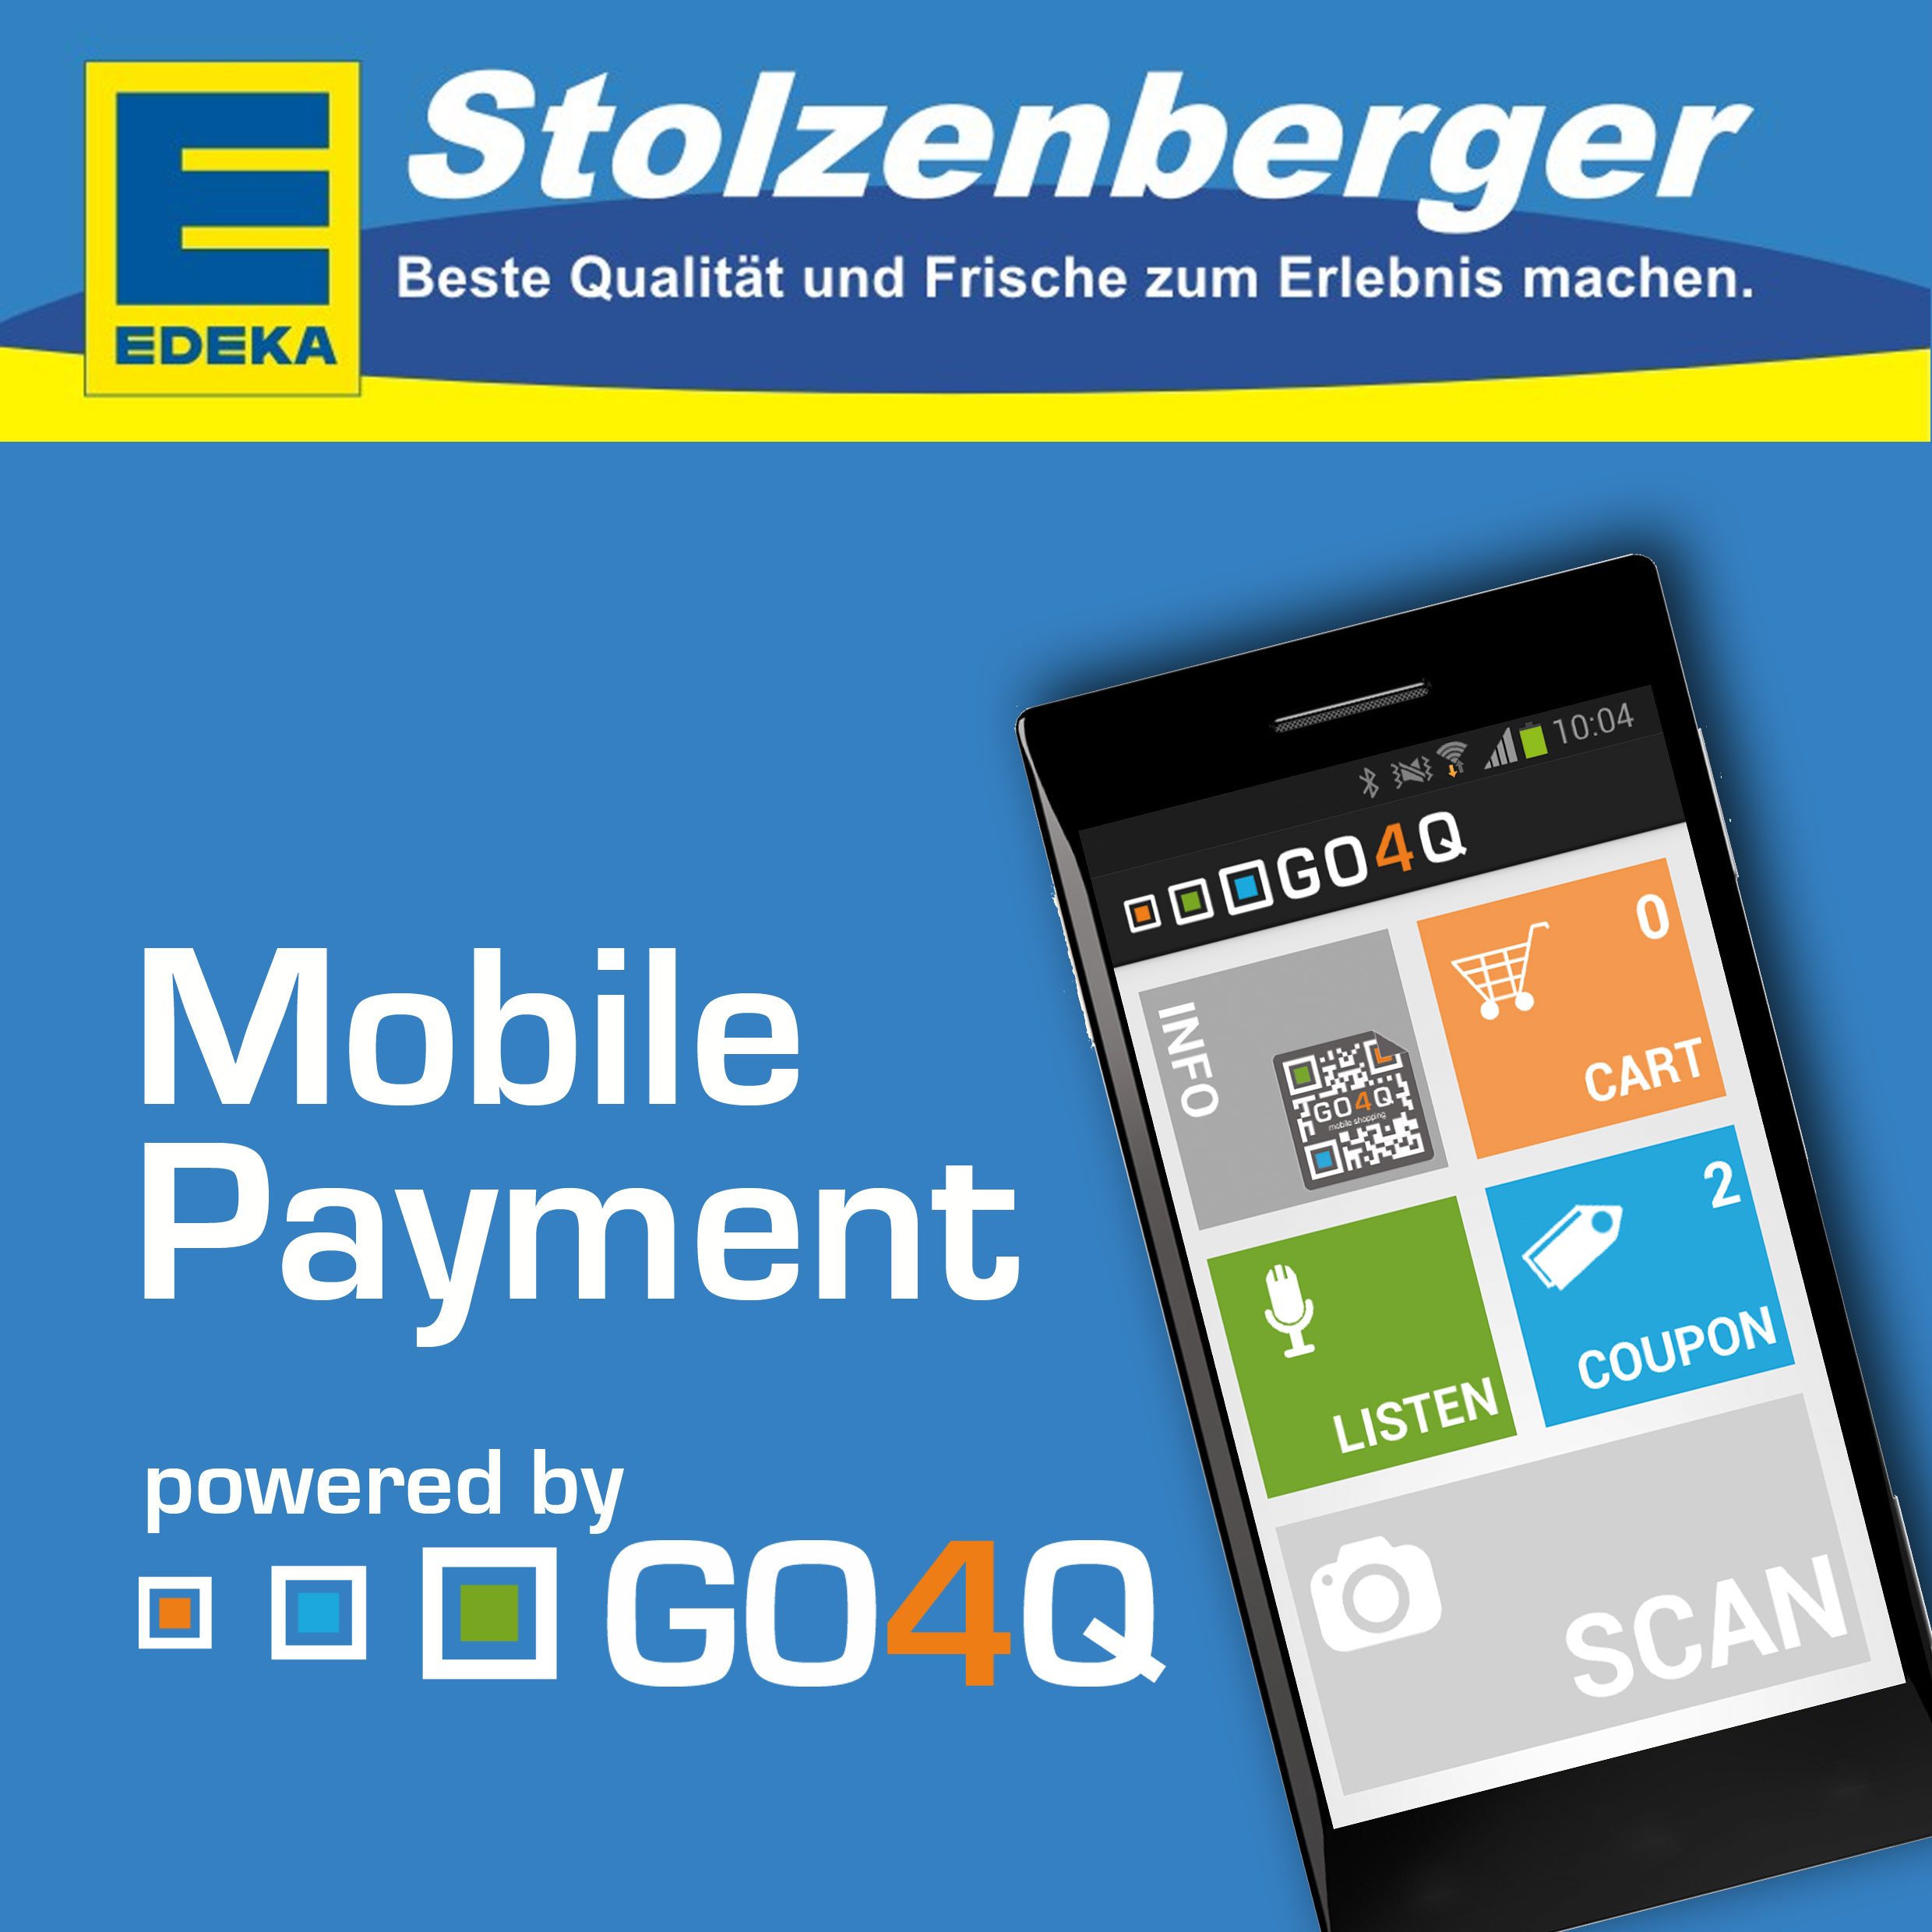 Tickets / Konzertkarten / Eintrittskarten | Mobile Payment mit GO4Q jetzt auch bei EDEKA Stolzenberger